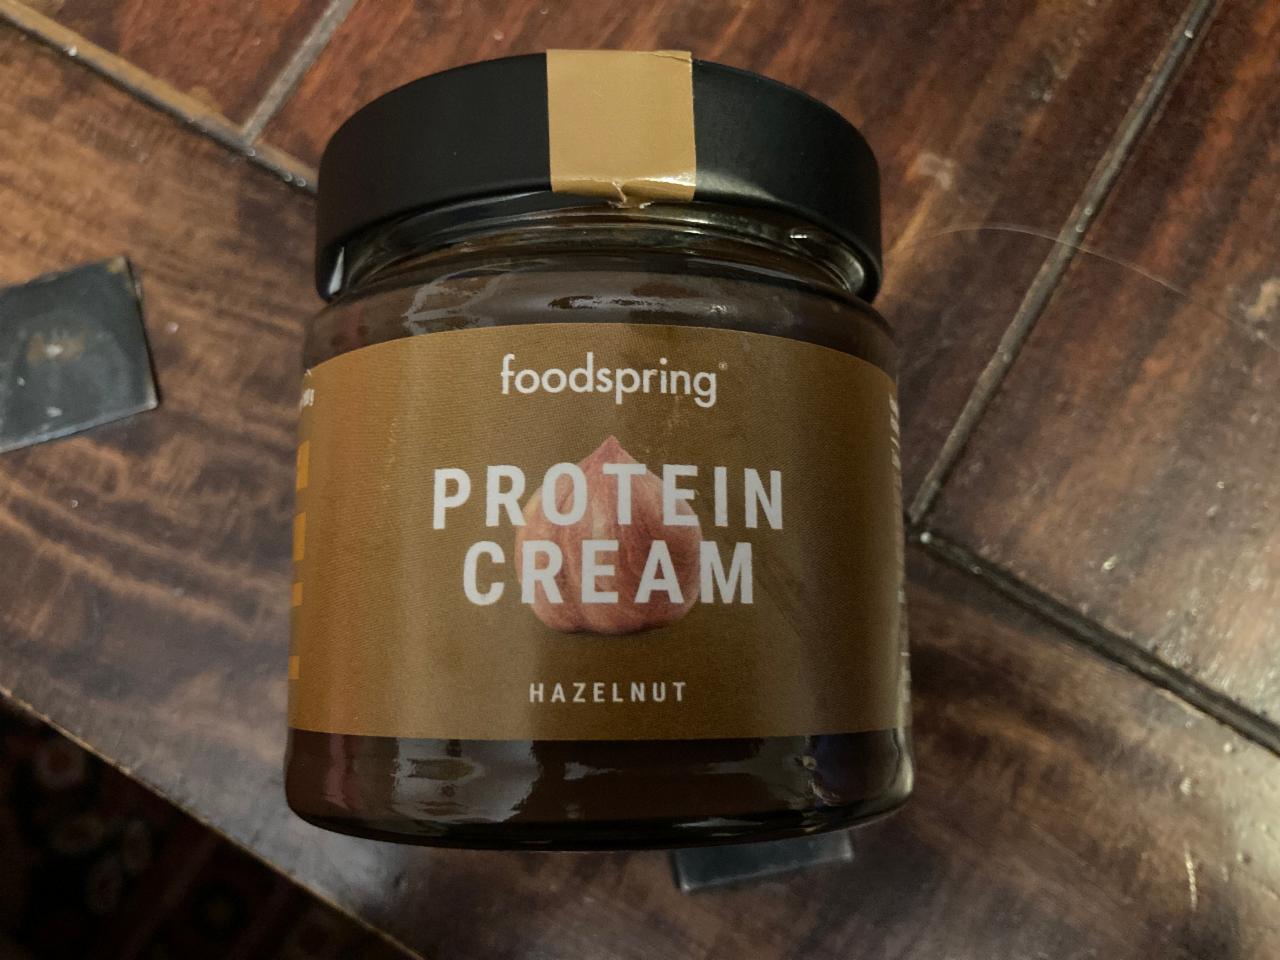 Fotografie - Foodspring Protein Cream Hazelnut